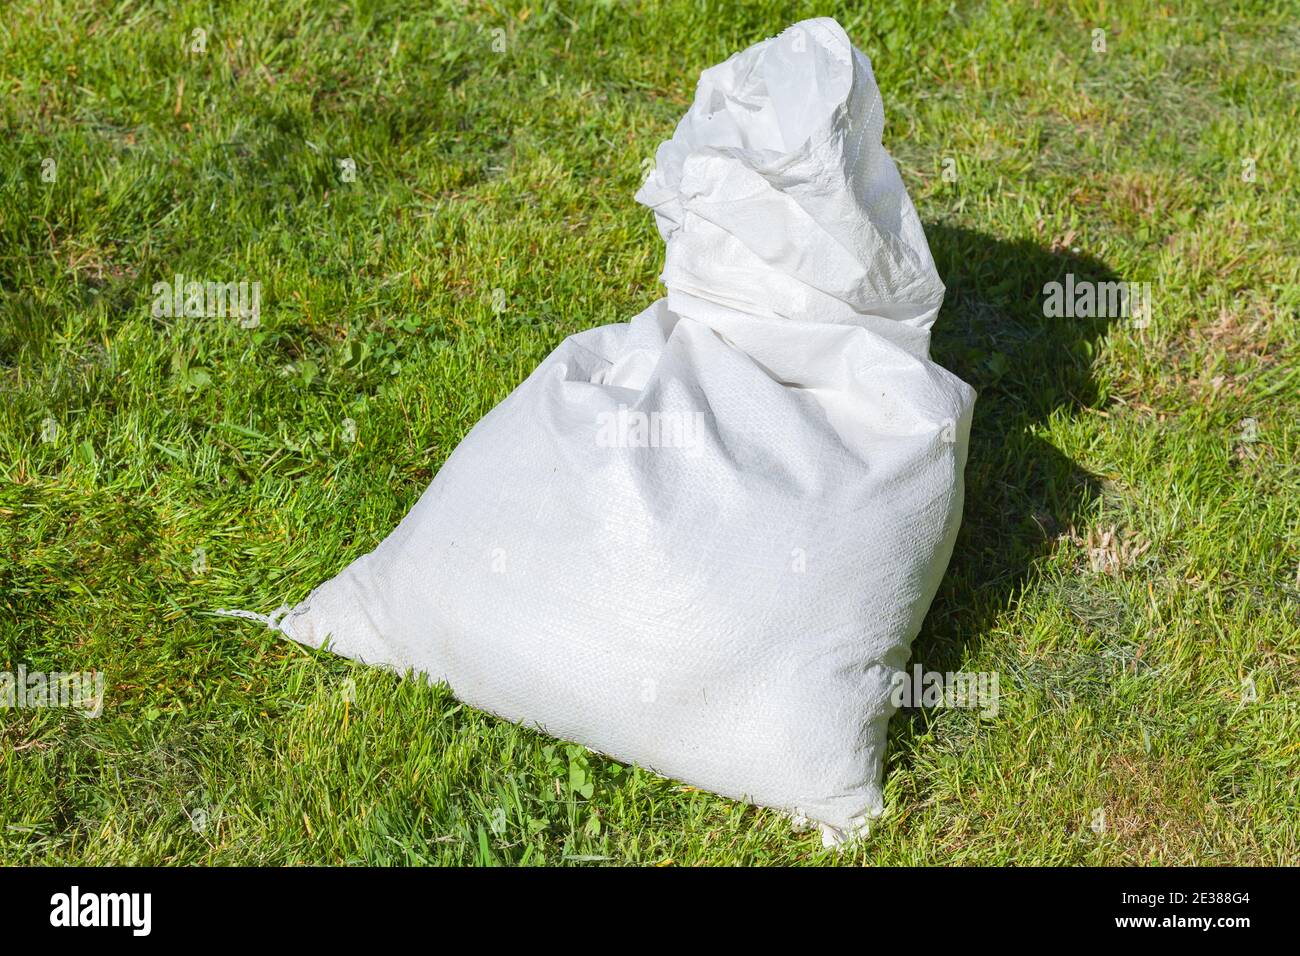 Le sac en polypropylène blanc repose sur l'herbe verte au soleil jour Banque D'Images